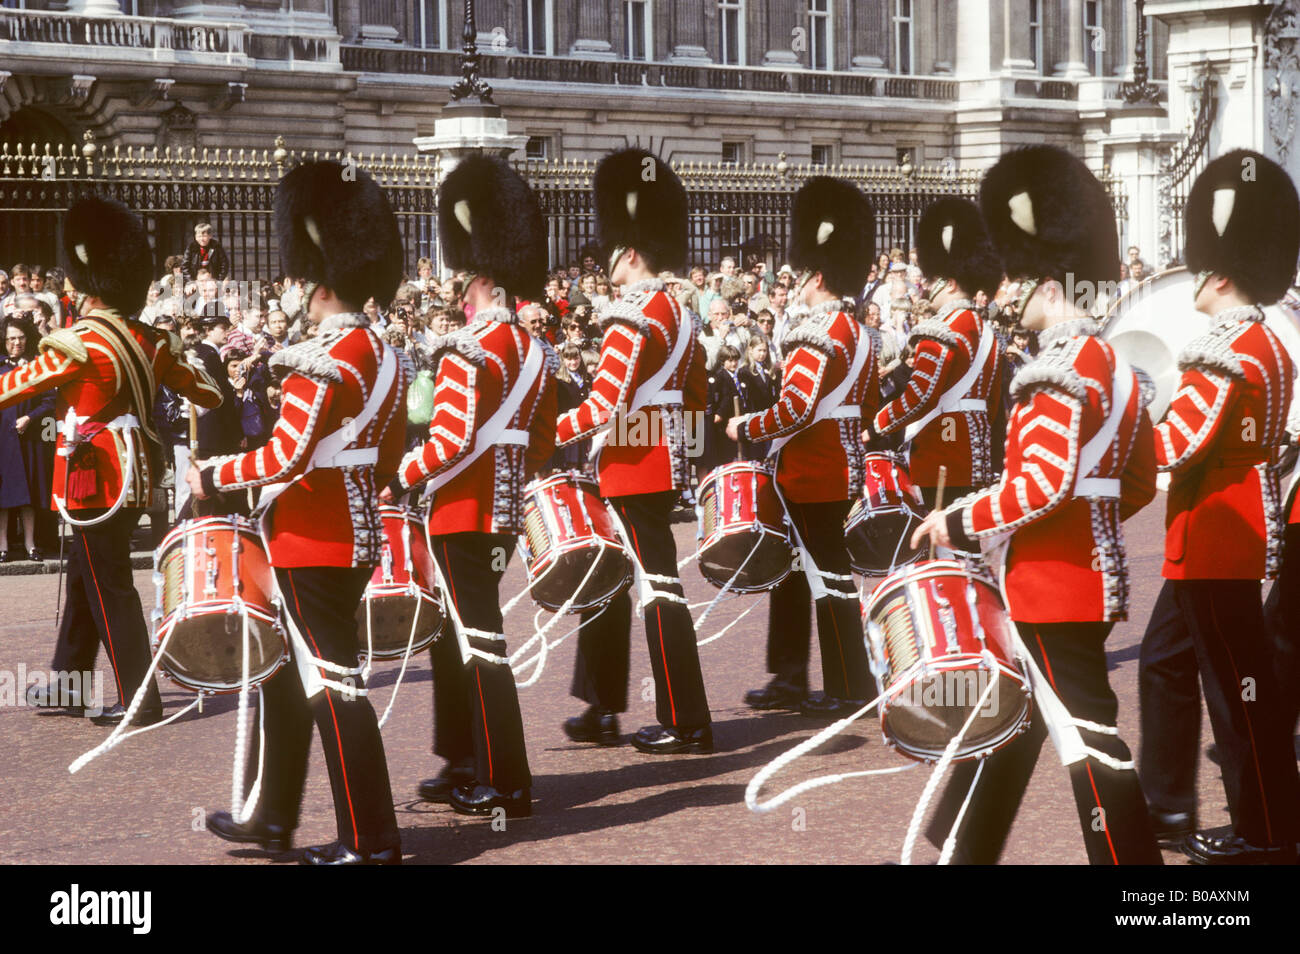 Grenadier guards marchant au palais de Buckingham Londres Angleterre Royaume-Uni British Army uniforme de cérémonie cérémonie tambours bearskin Banque D'Images